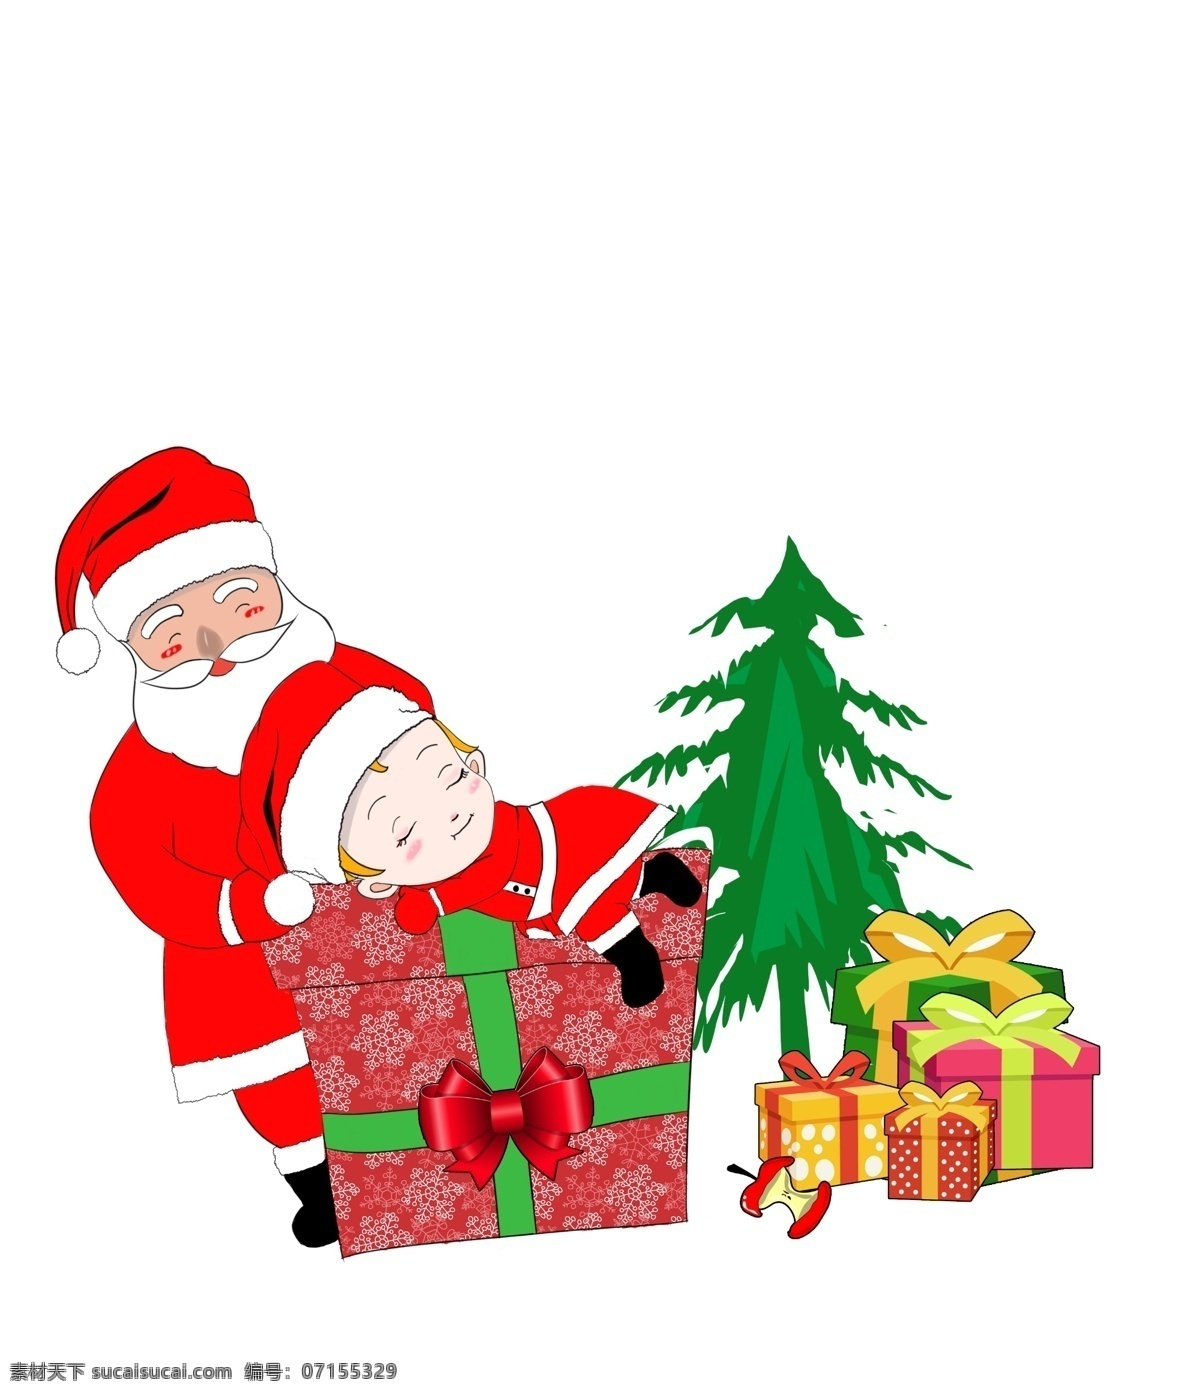 手绘 卡通 圣诞老人 小孩 宝宝 儿童 圣诞节 圣诞礼物 圣诞树 圣诞帽 节日装扮 送礼 礼盒